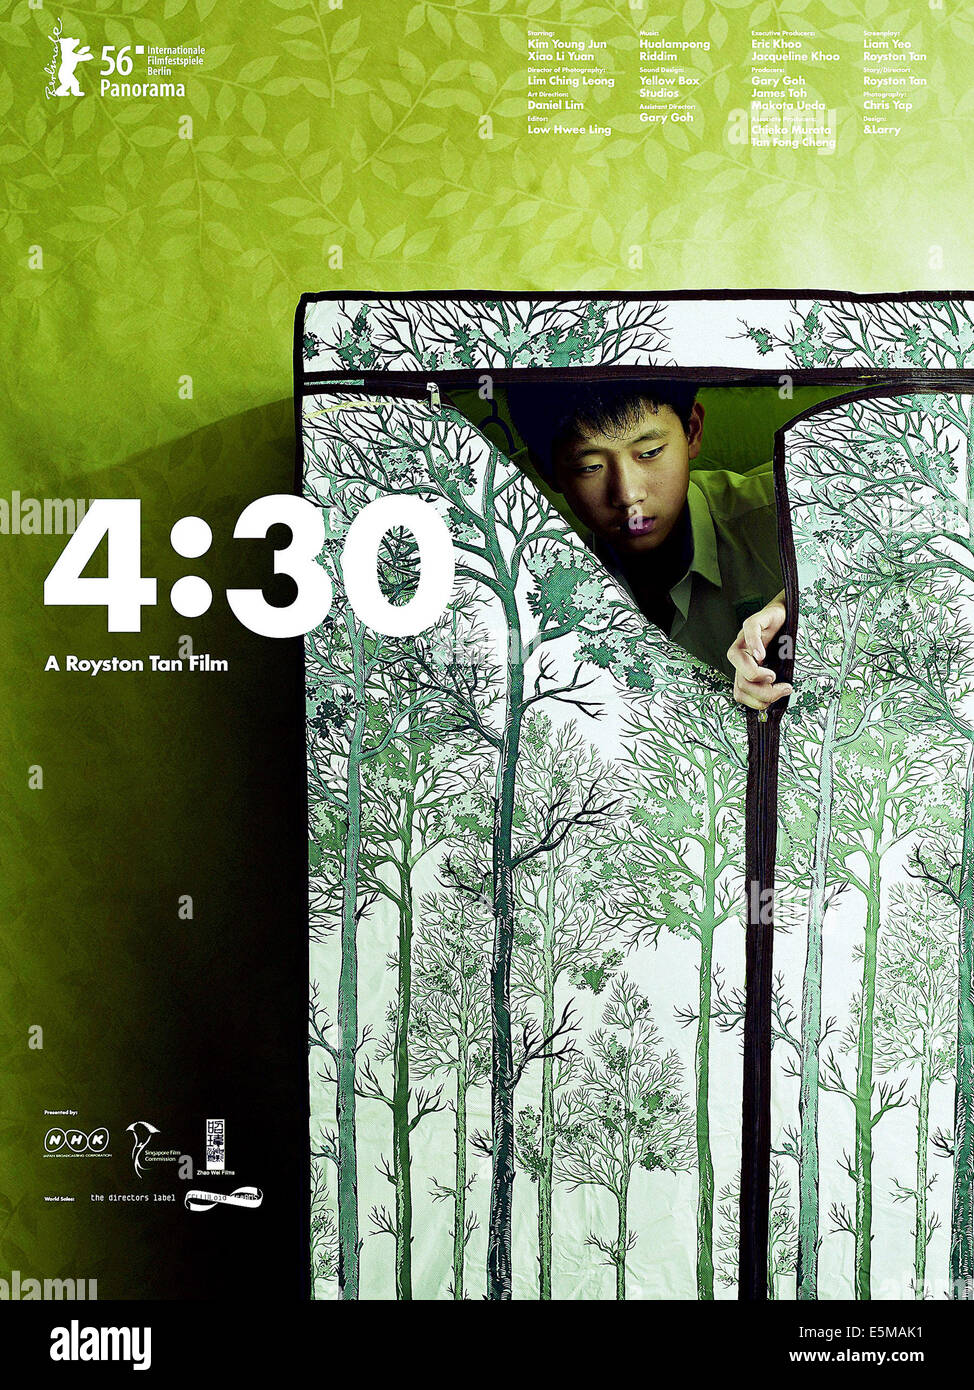 4:30, Kim Young-jun, 2005 Stock Photo